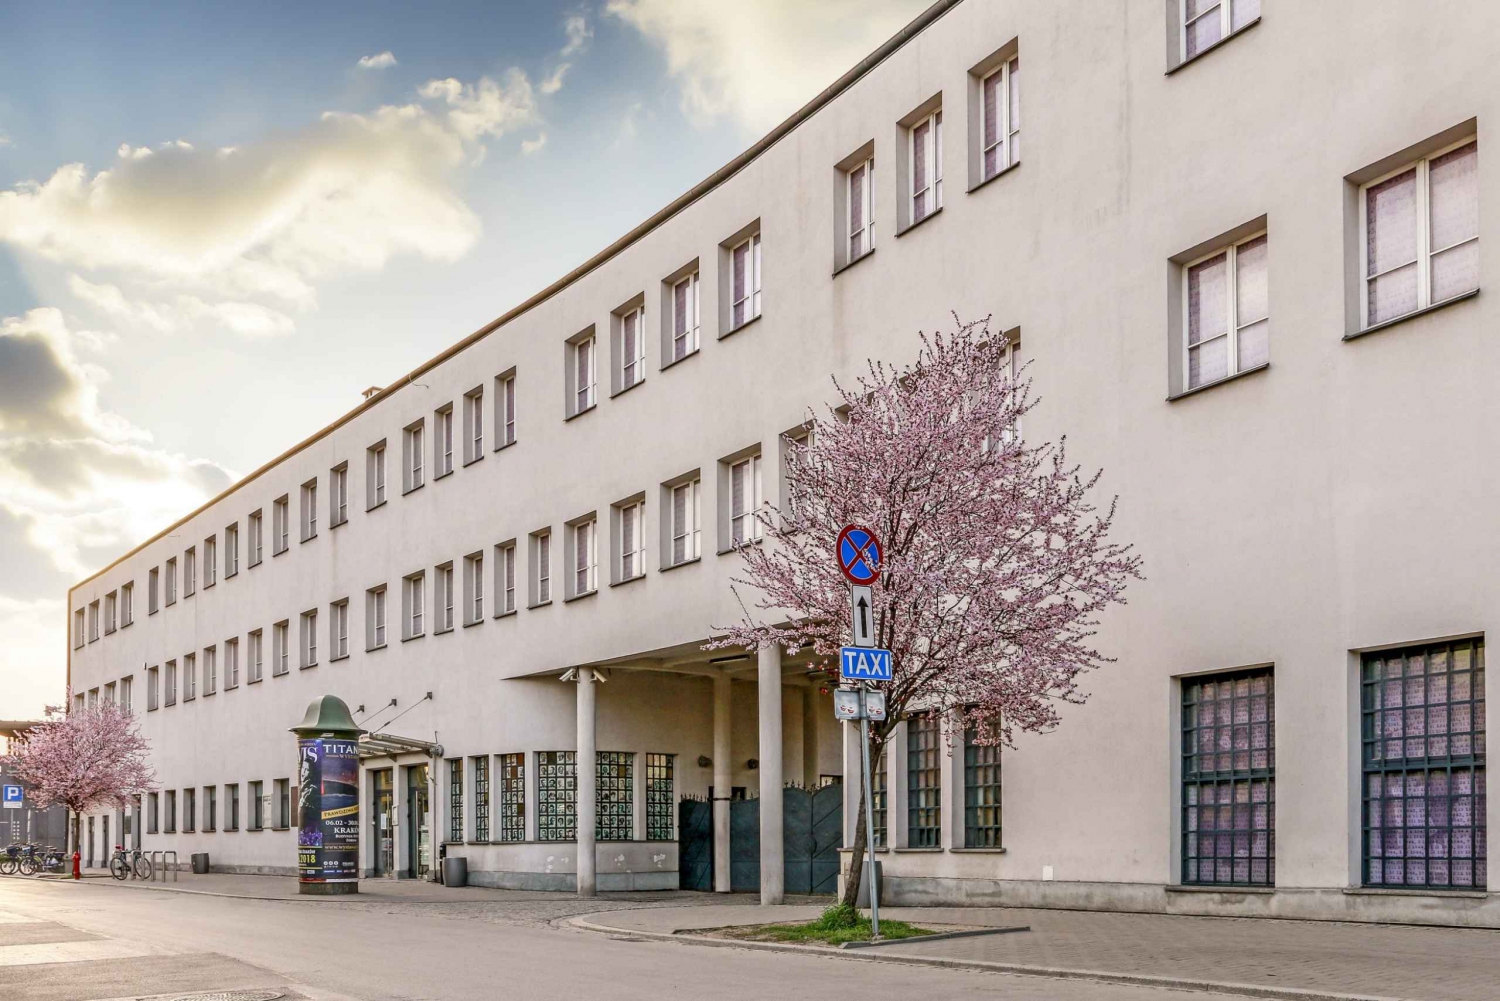 Cracovie: visite guidée du musée de l'usine d'émail d'Oskar Schindler